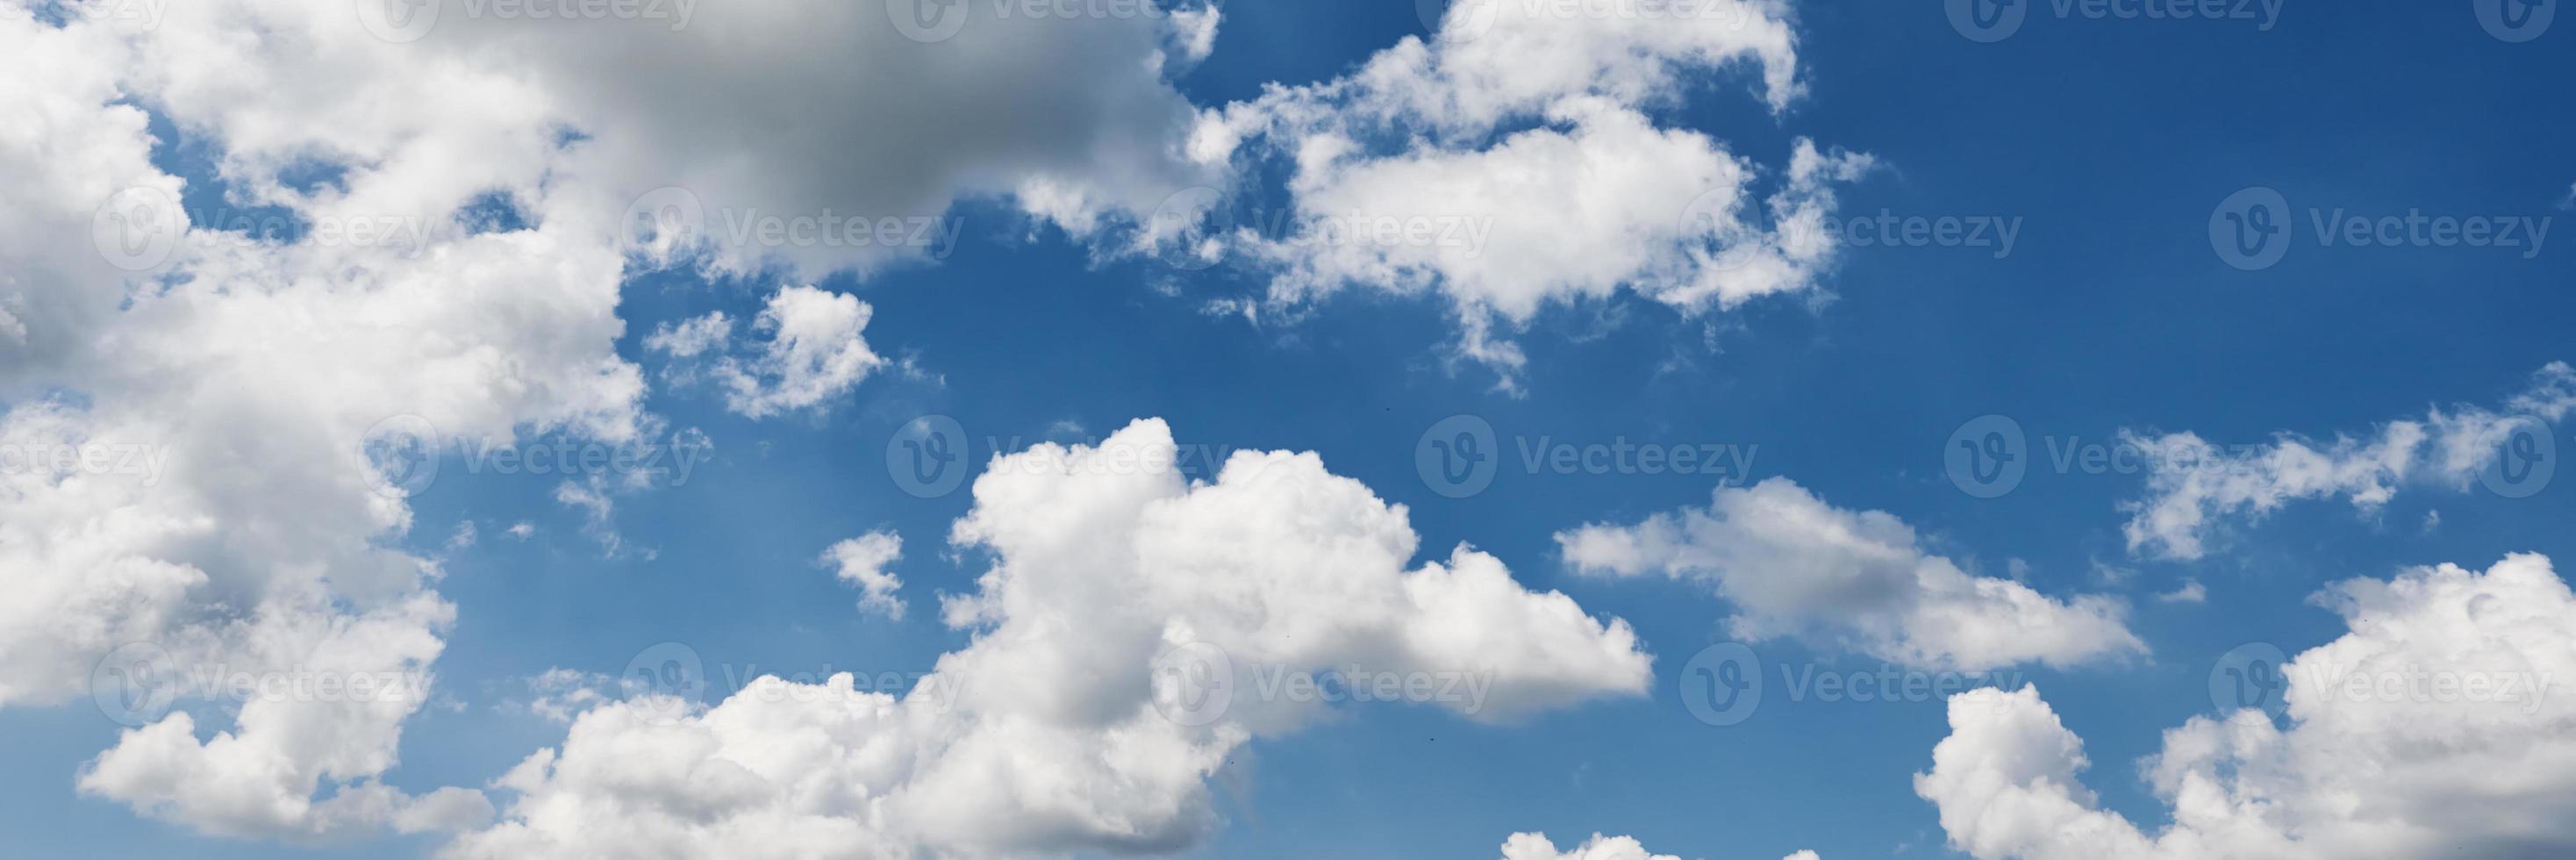 Hintergrund des blauen Himmels mit Wolken am Sommertag. Panoramablick foto